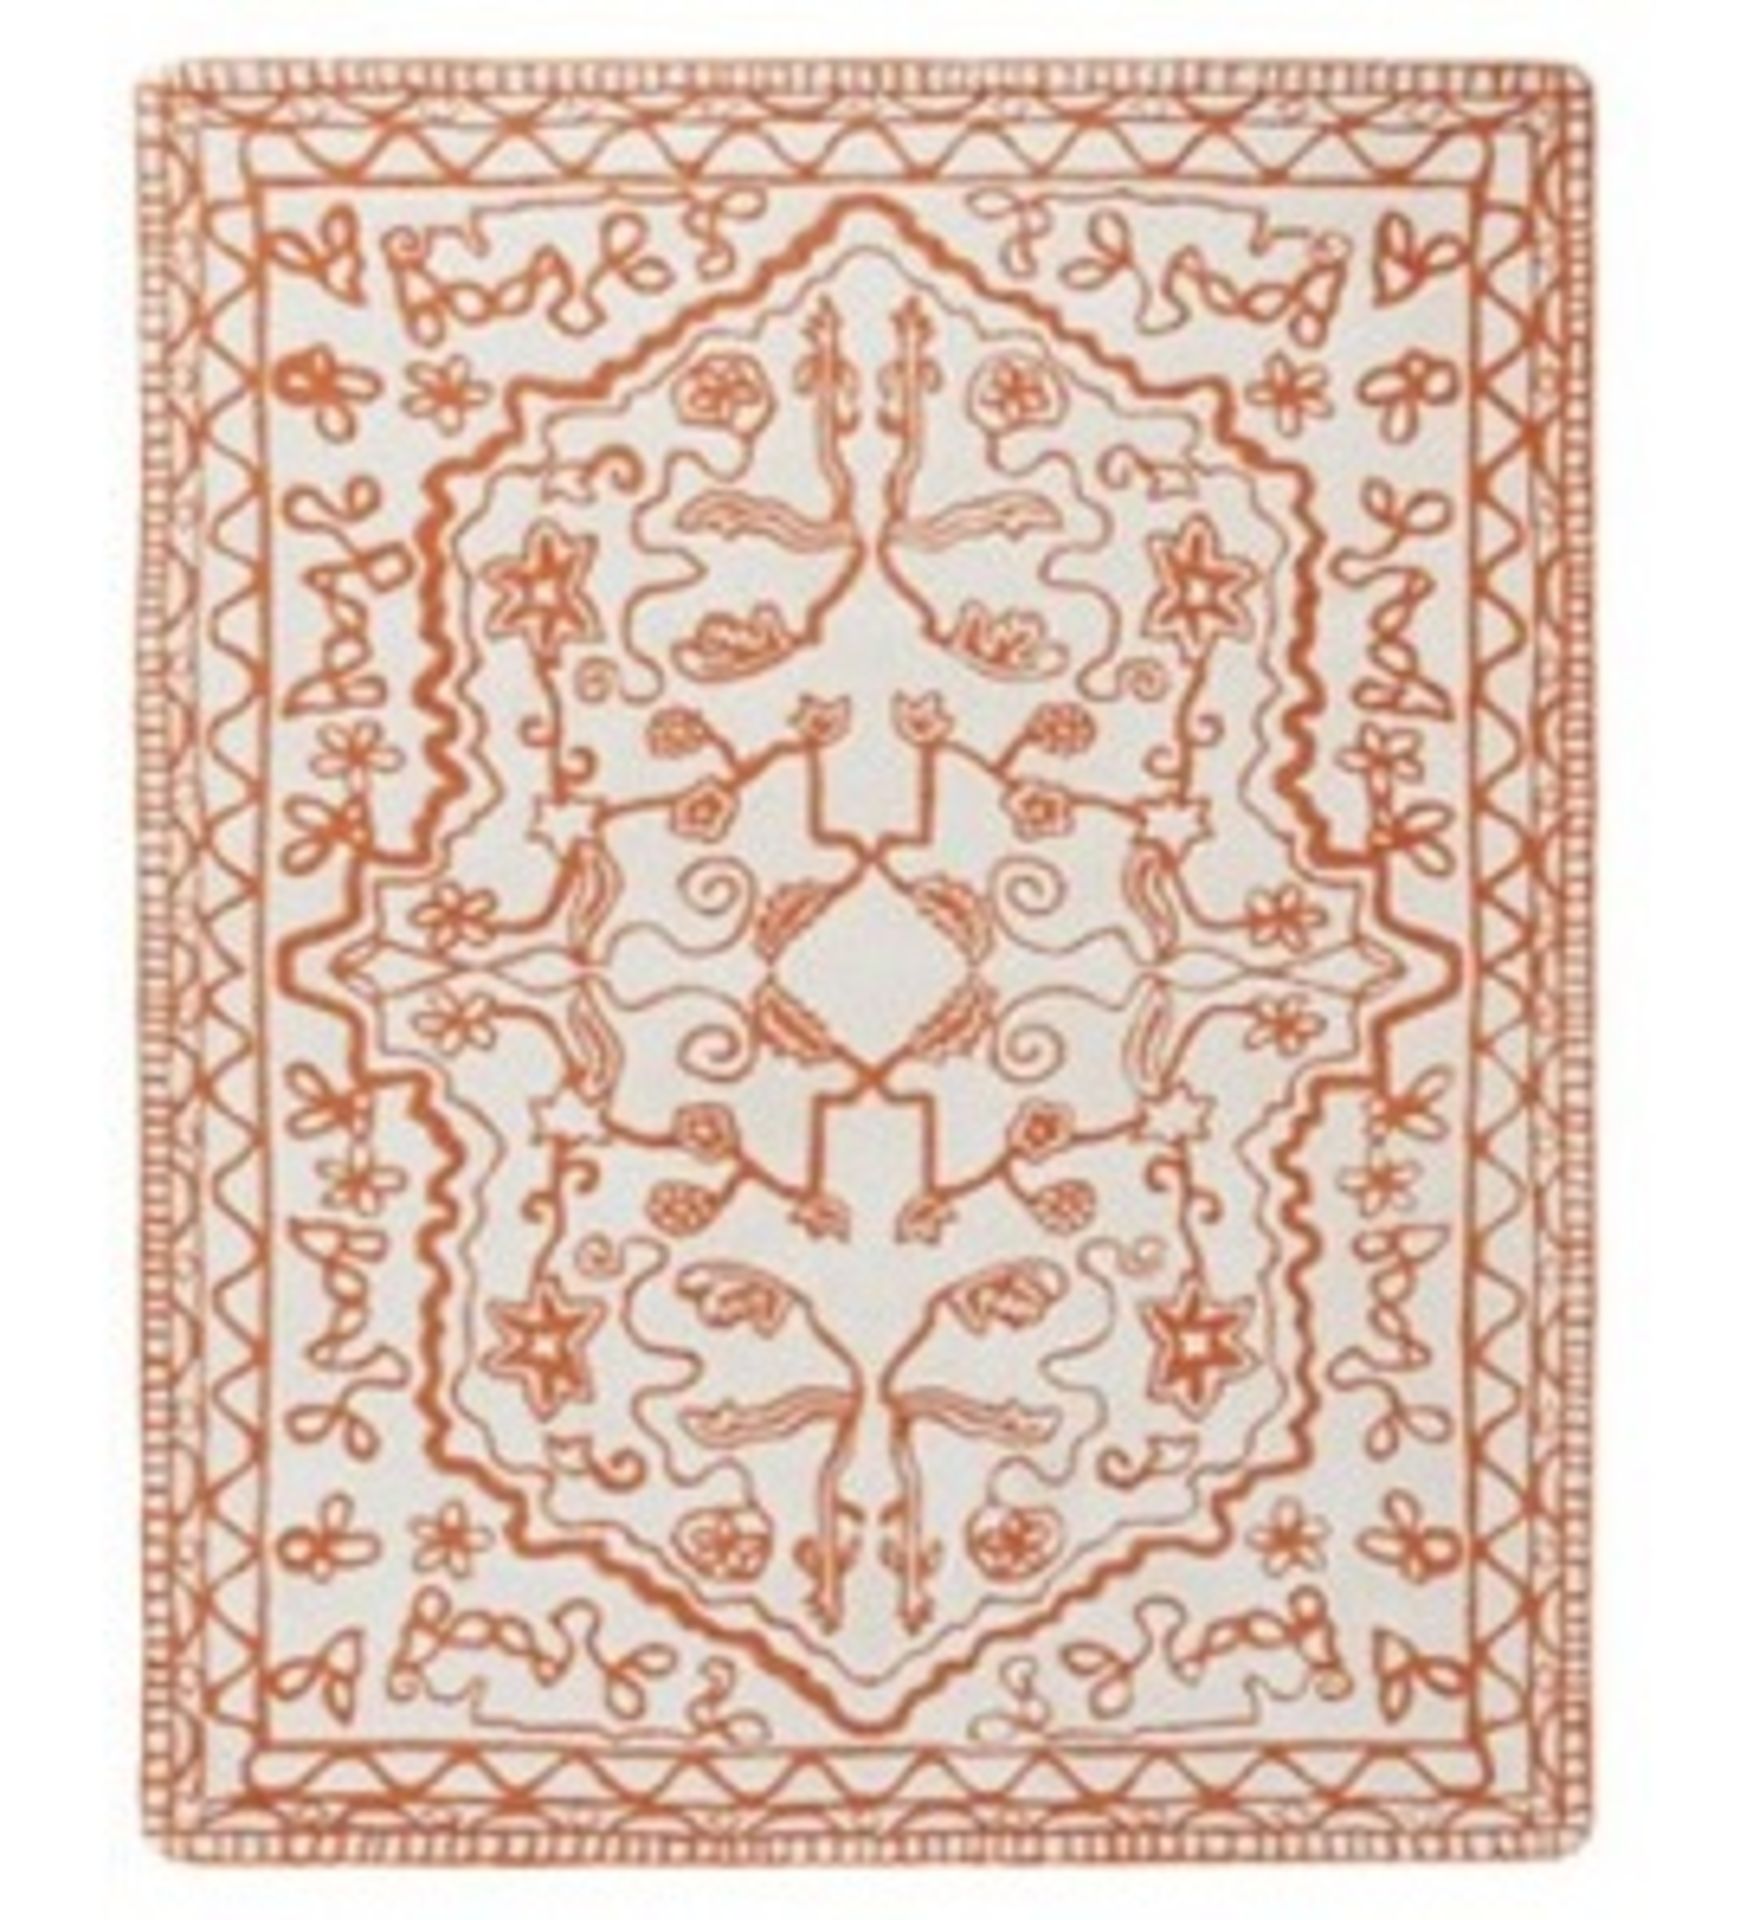 1 x LIGNE ROSET Wool Rug 250 X 200 Orange / White (Aw13) - Ref: 3597962 - CL087 - Location: